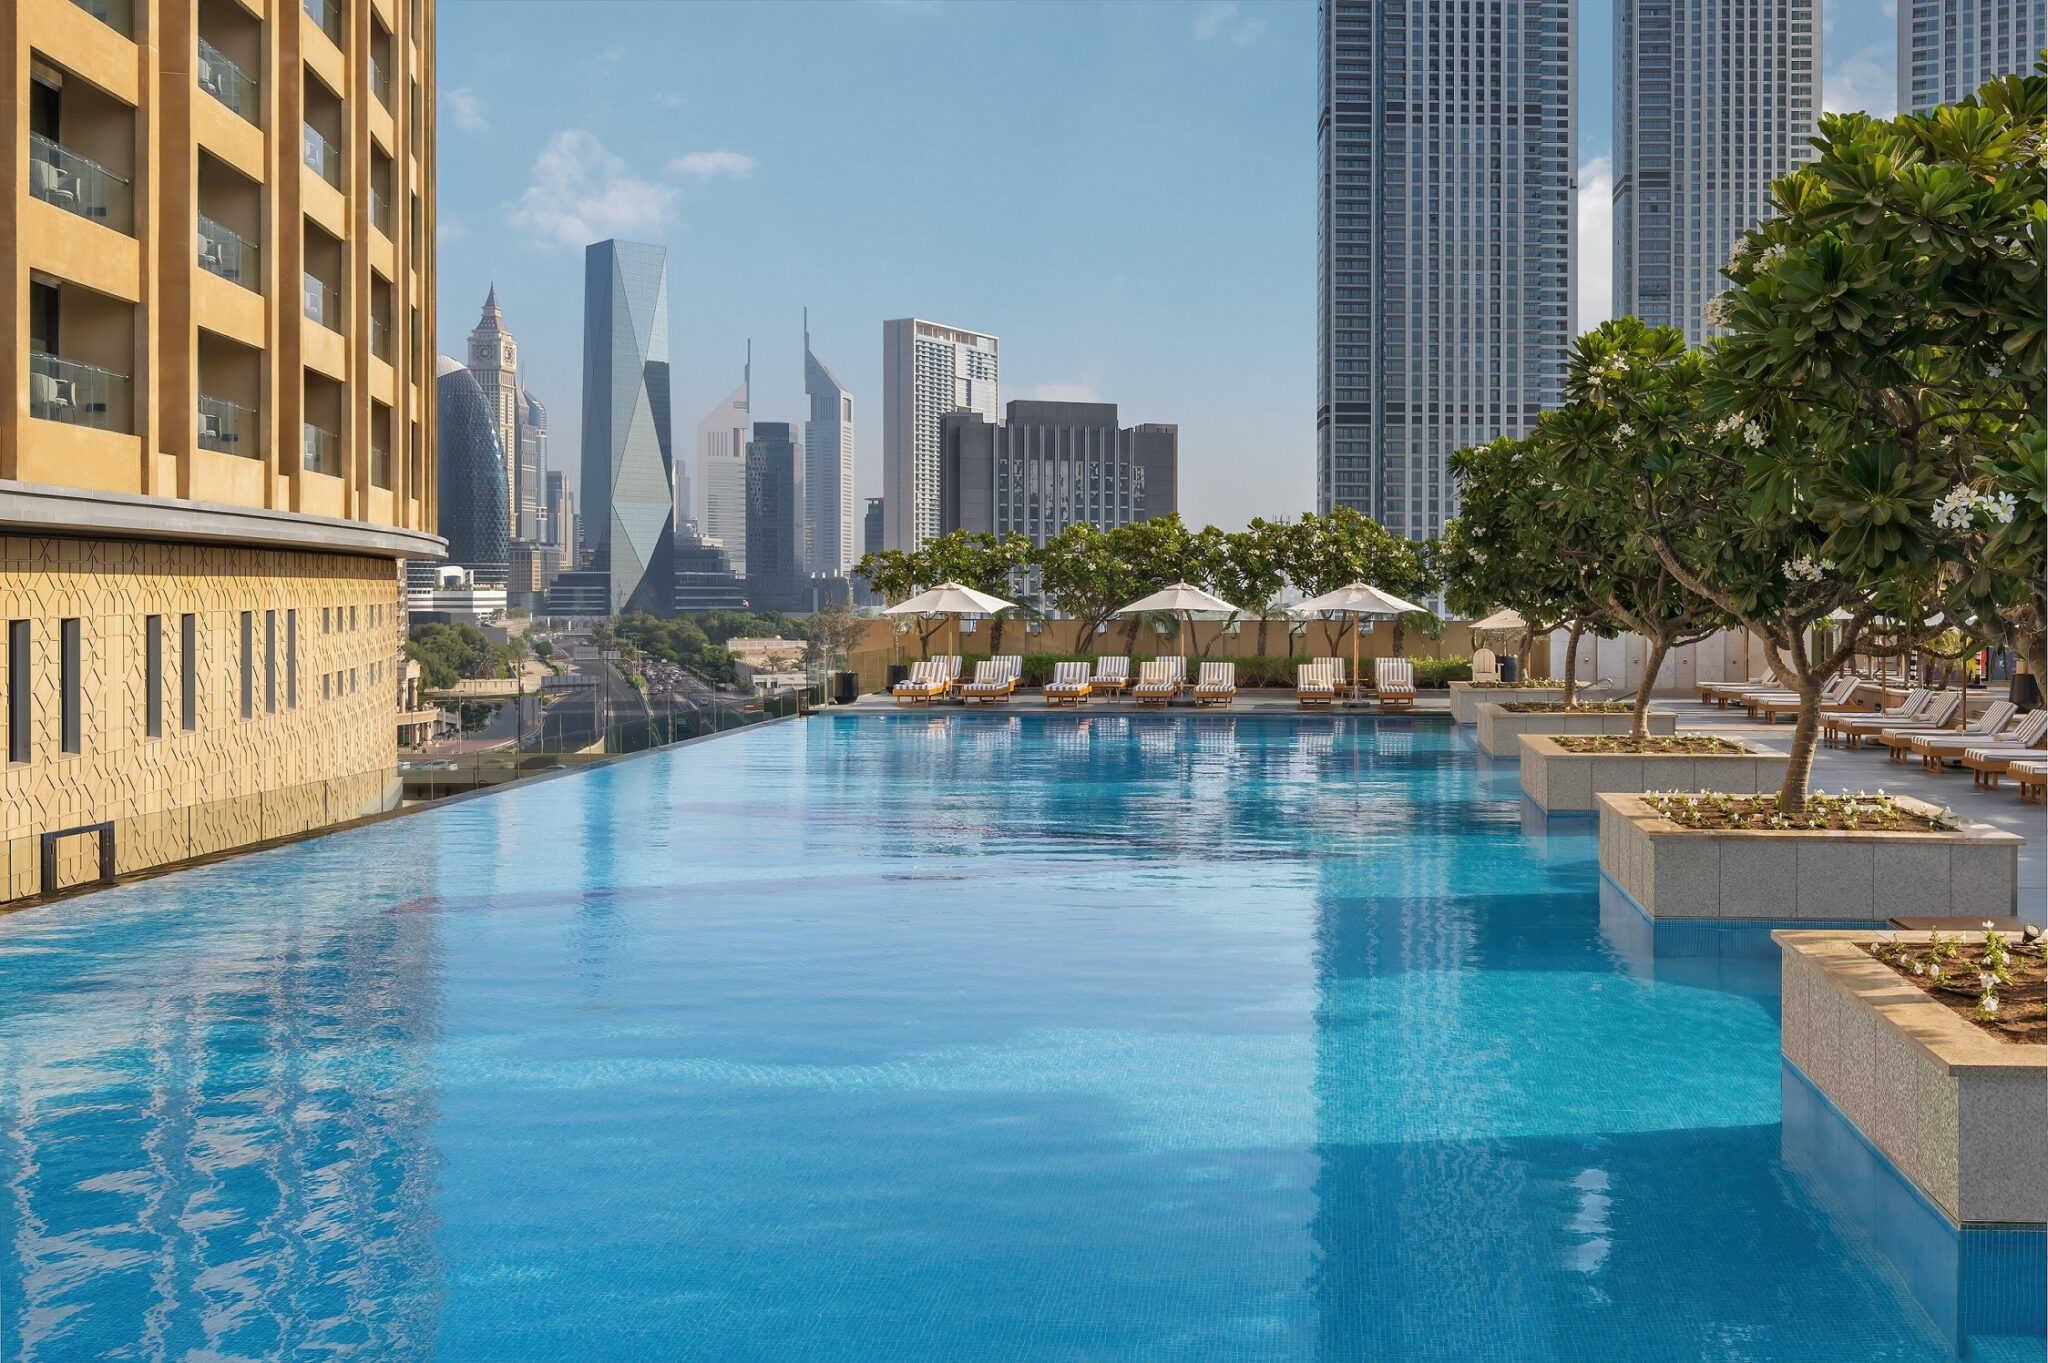 Kempinski flag to fly above two more landmark hotels in Dubai